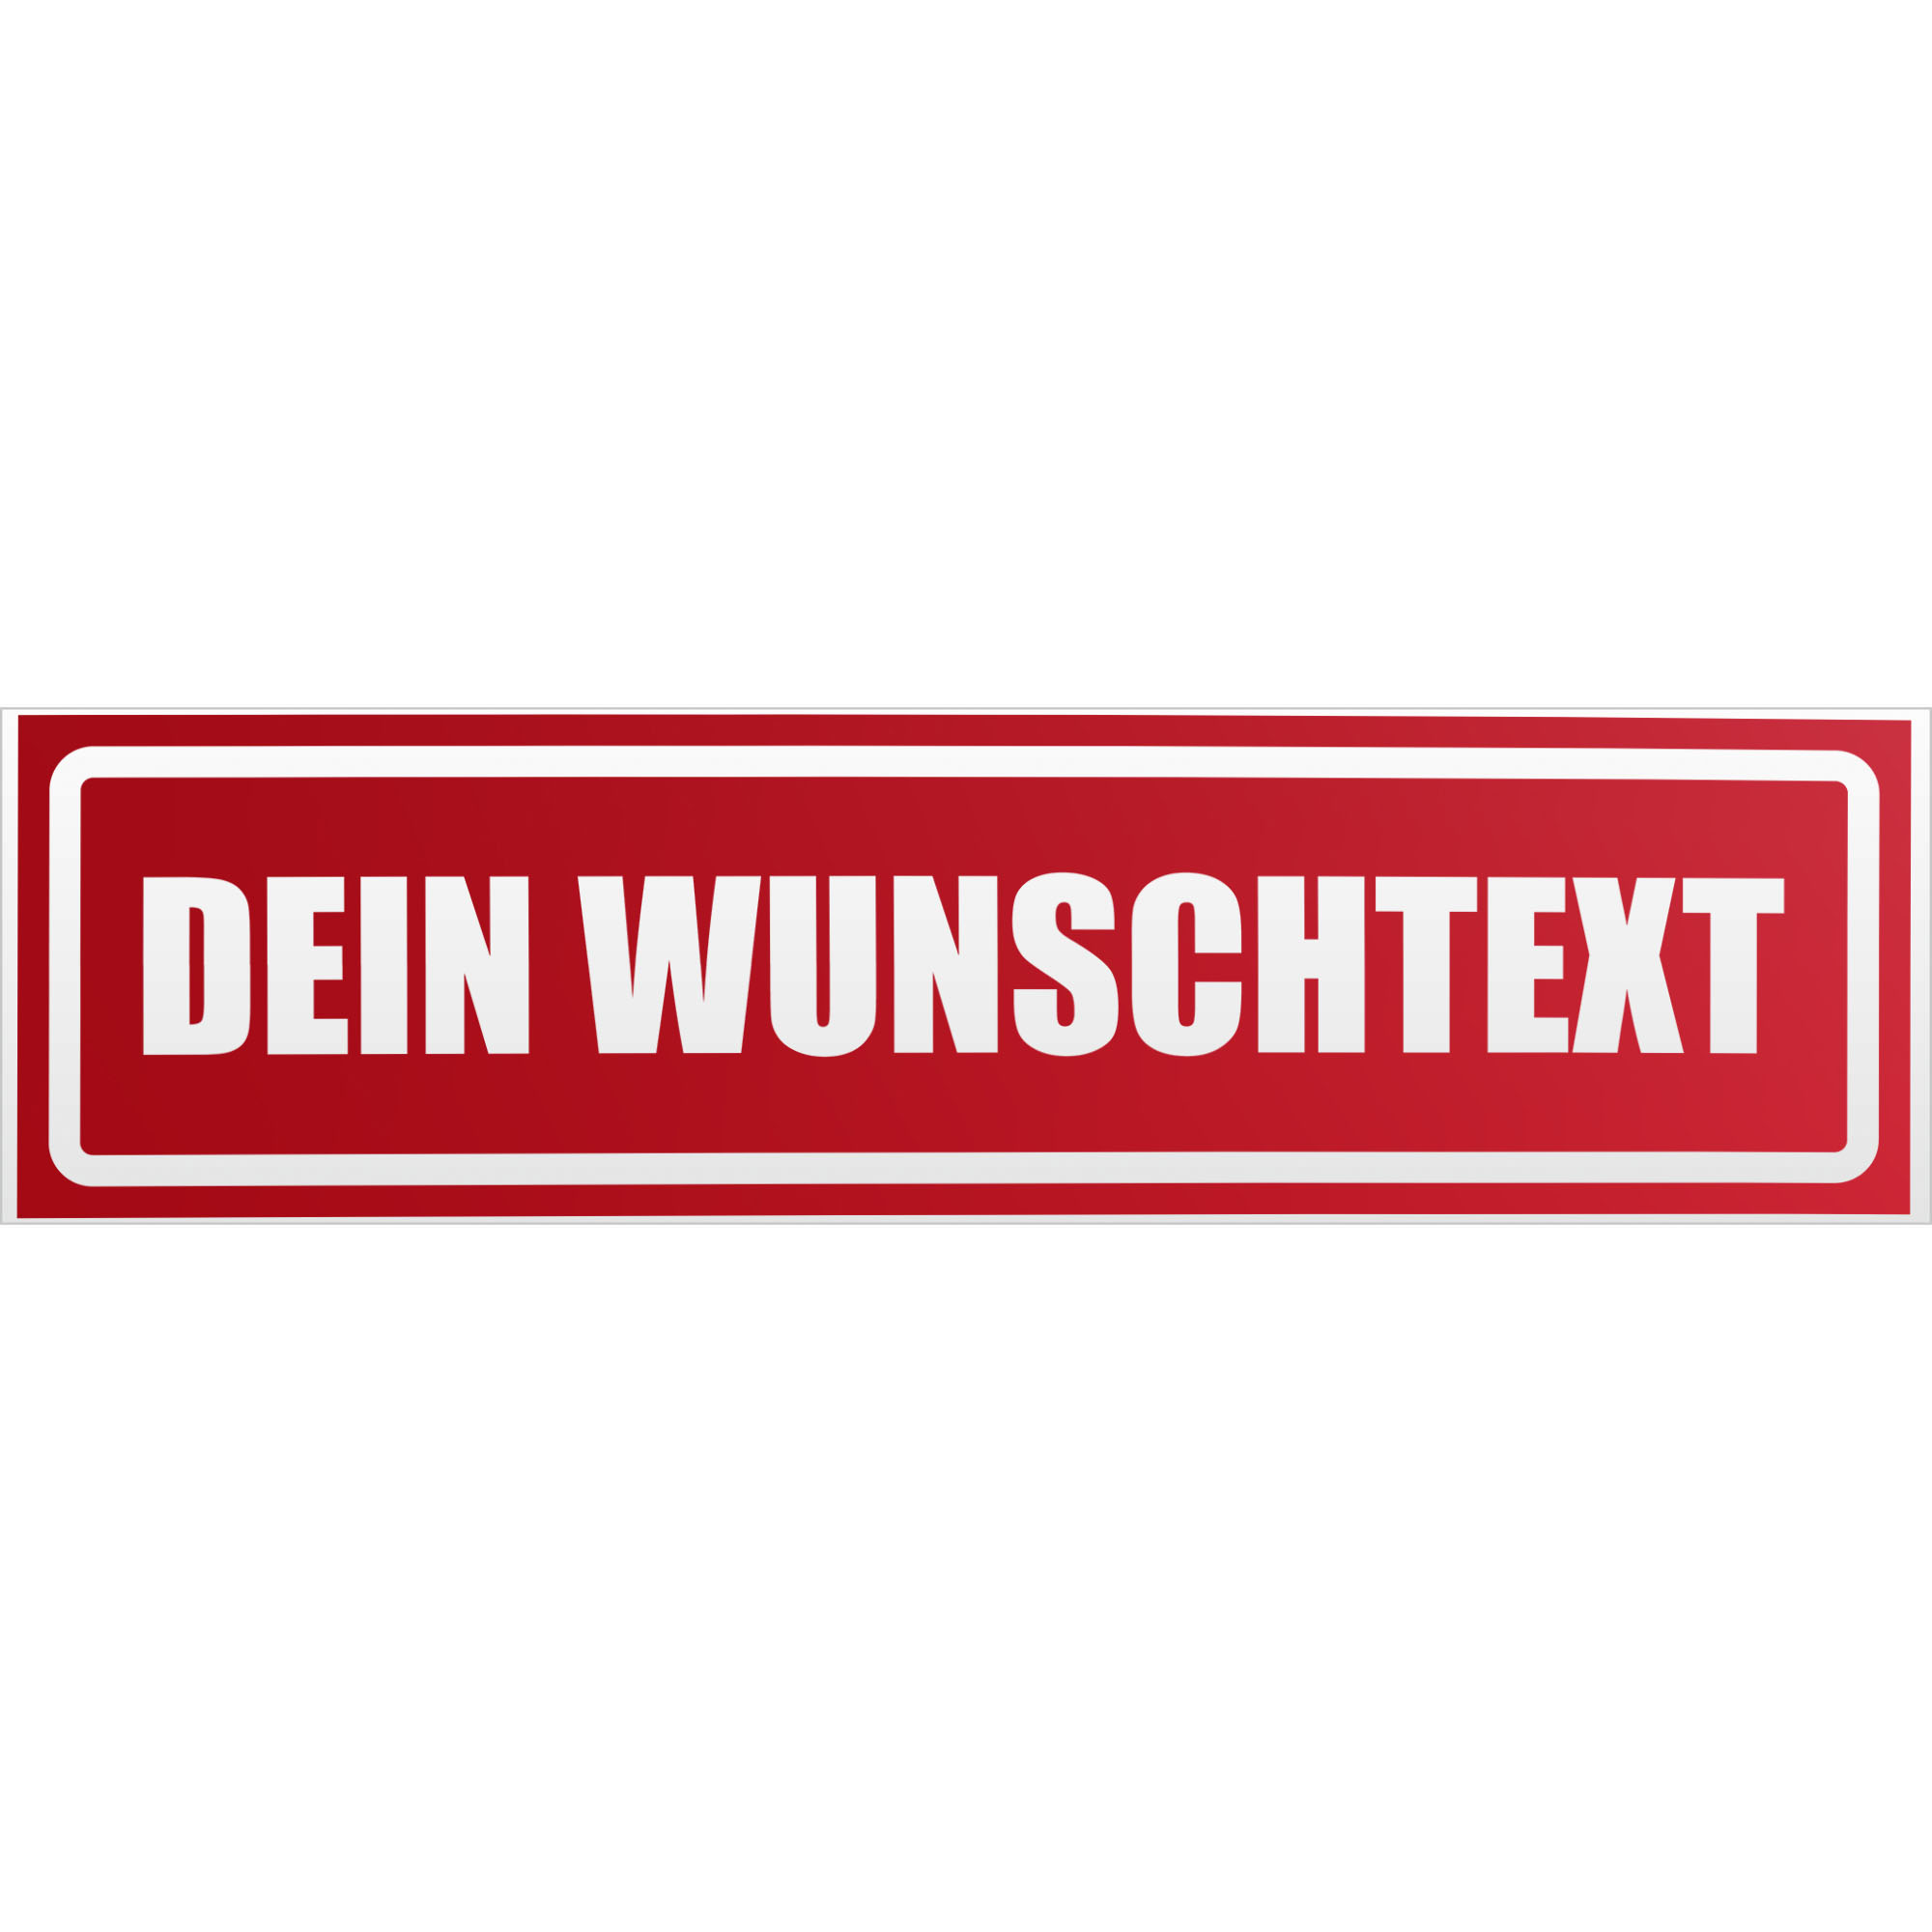 www.wunschtext.de gestreift Magnetschild Schild magnetisch 